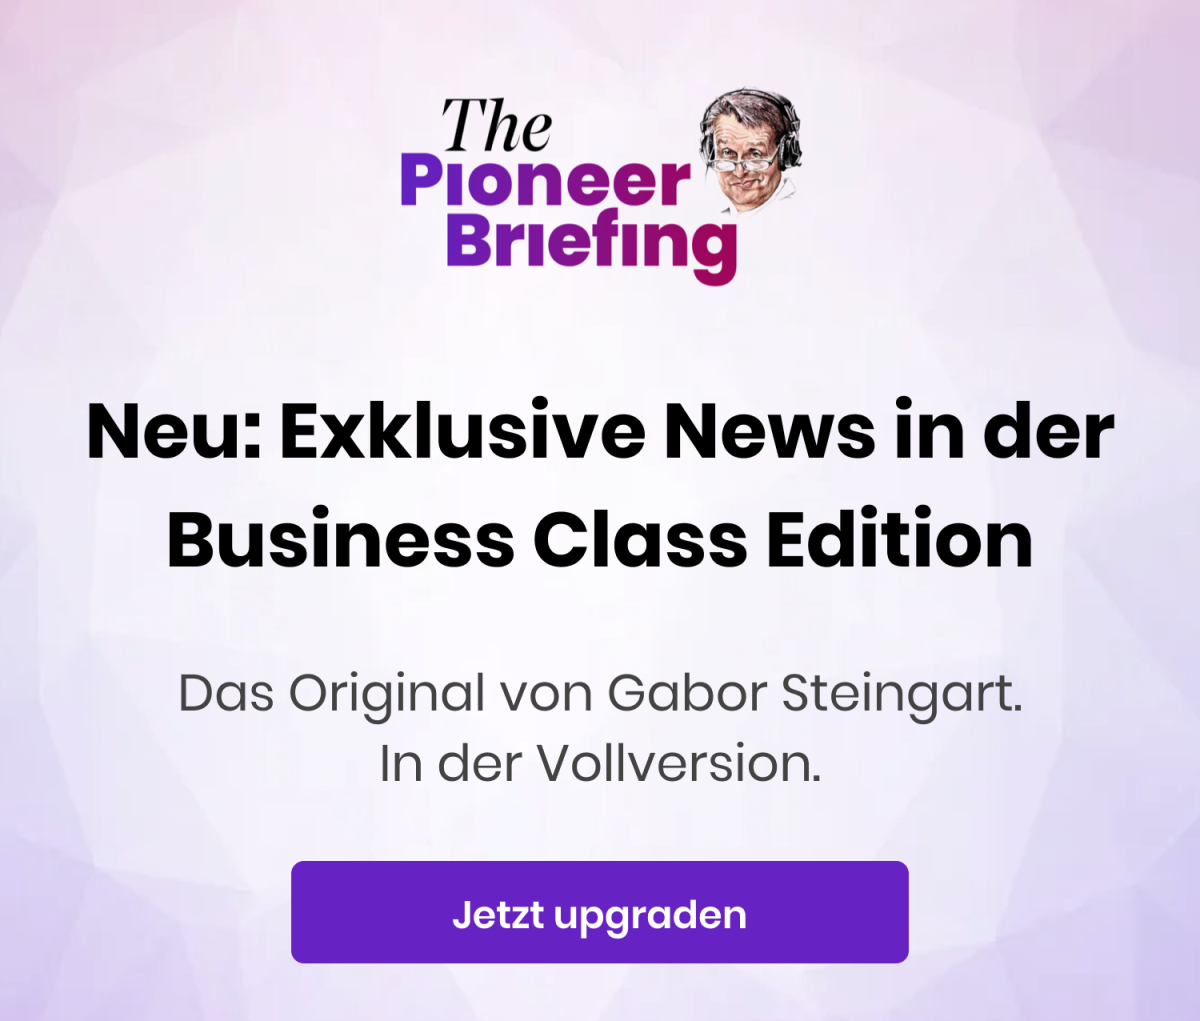 Teaser "Neu: Exklusive News in der Business Class Edition" 